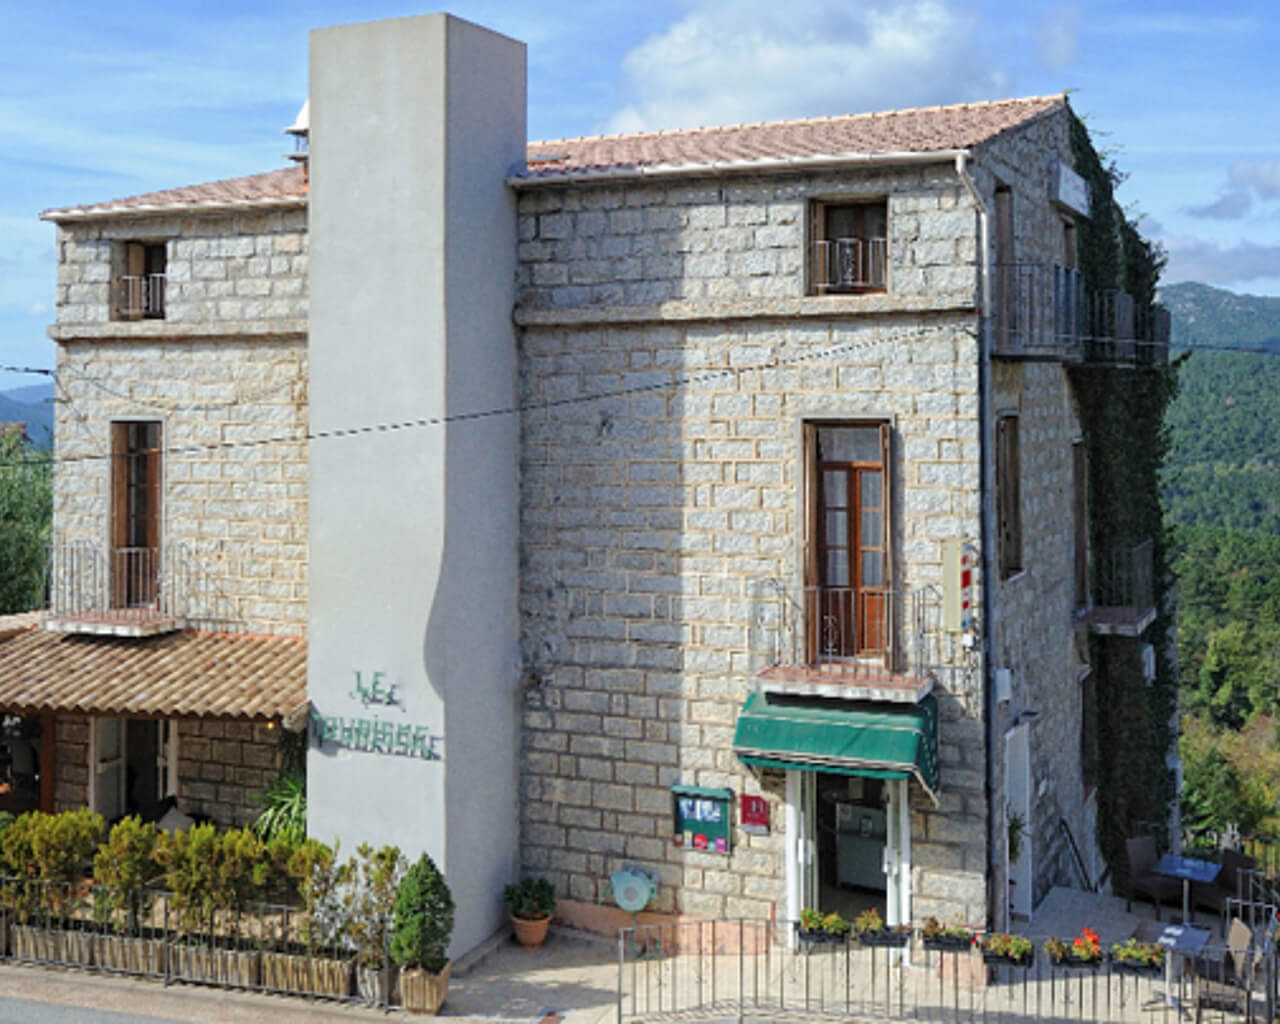 Corse, Zonza, Hôtel du tourisme